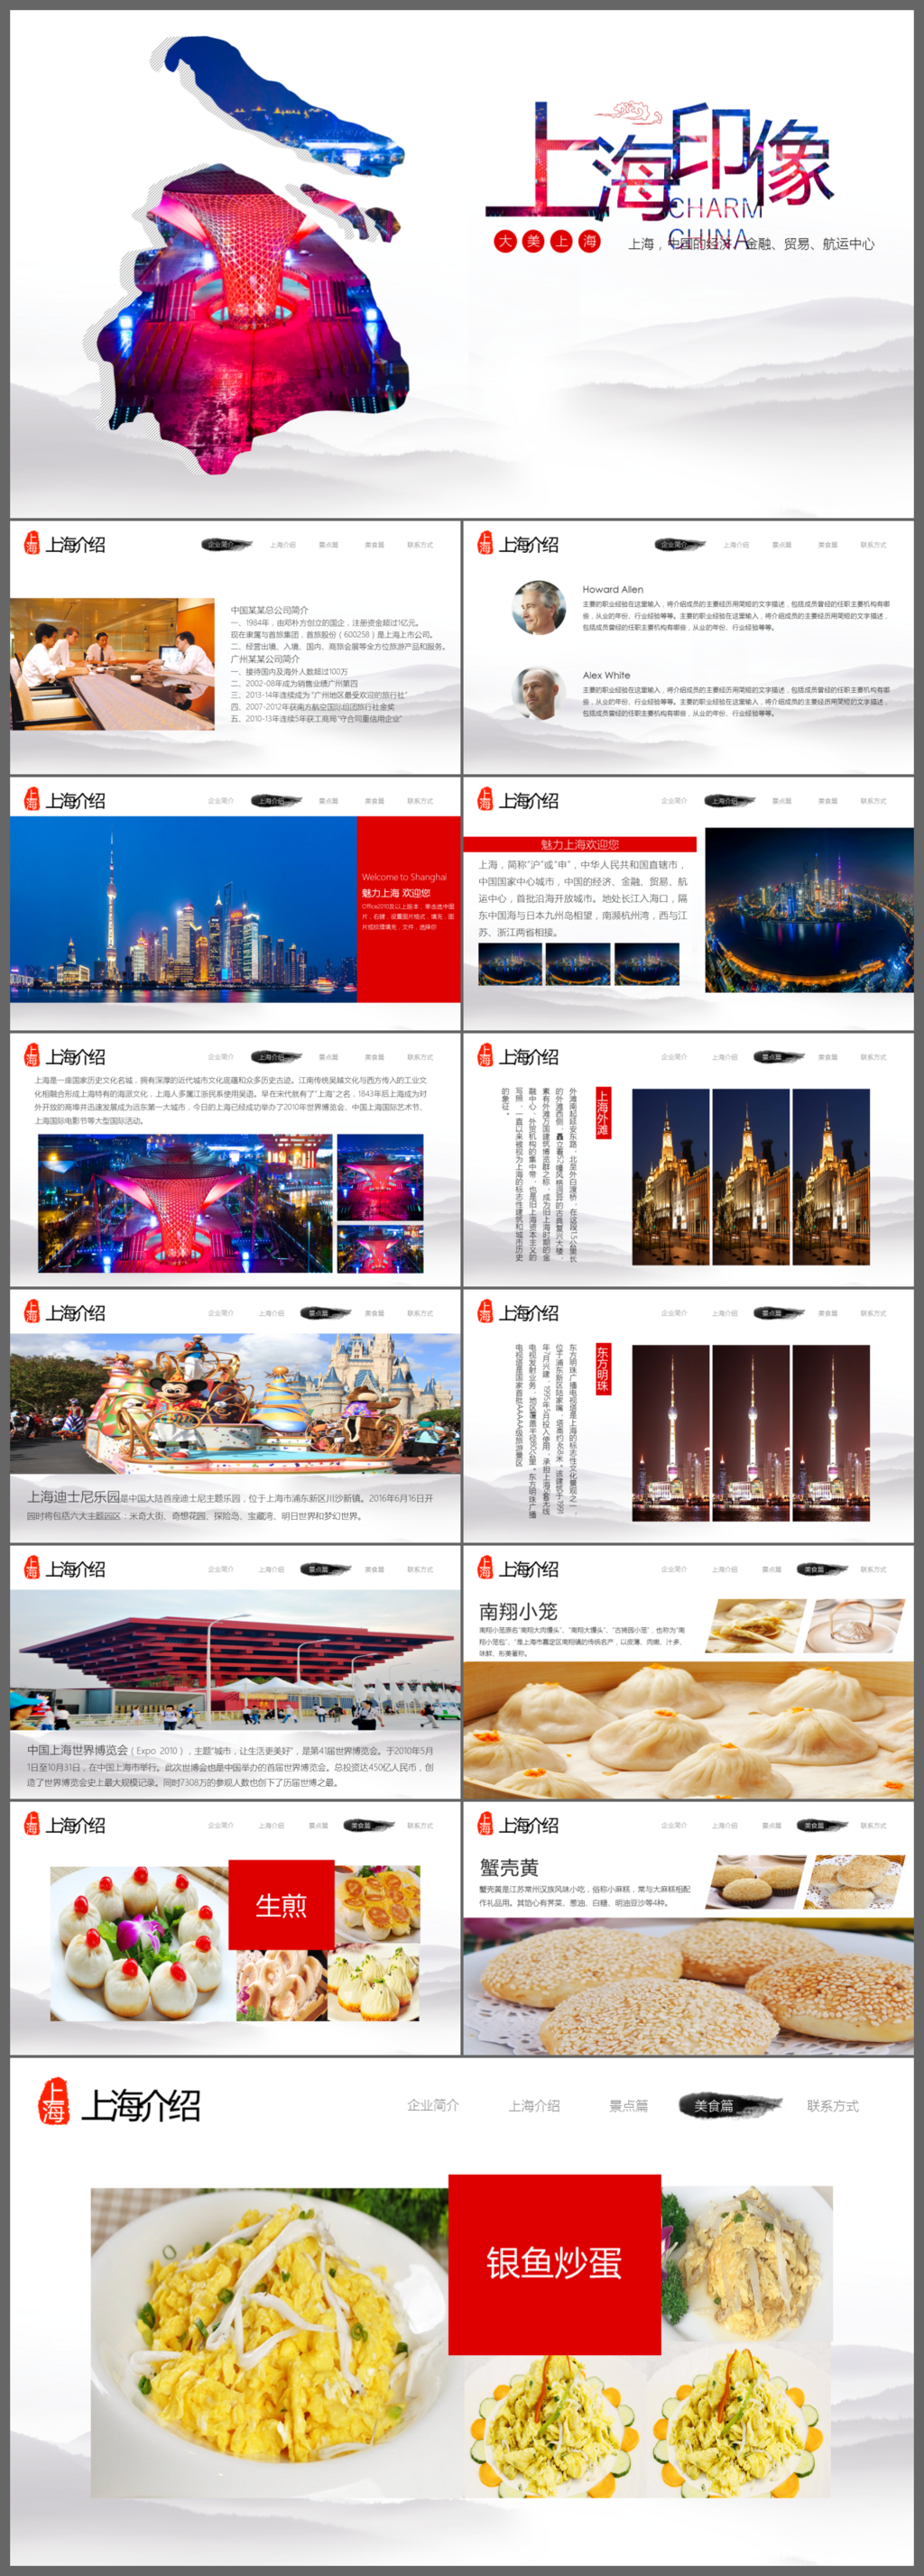 上海印象旅游景点介绍旅游宣传PPT模板